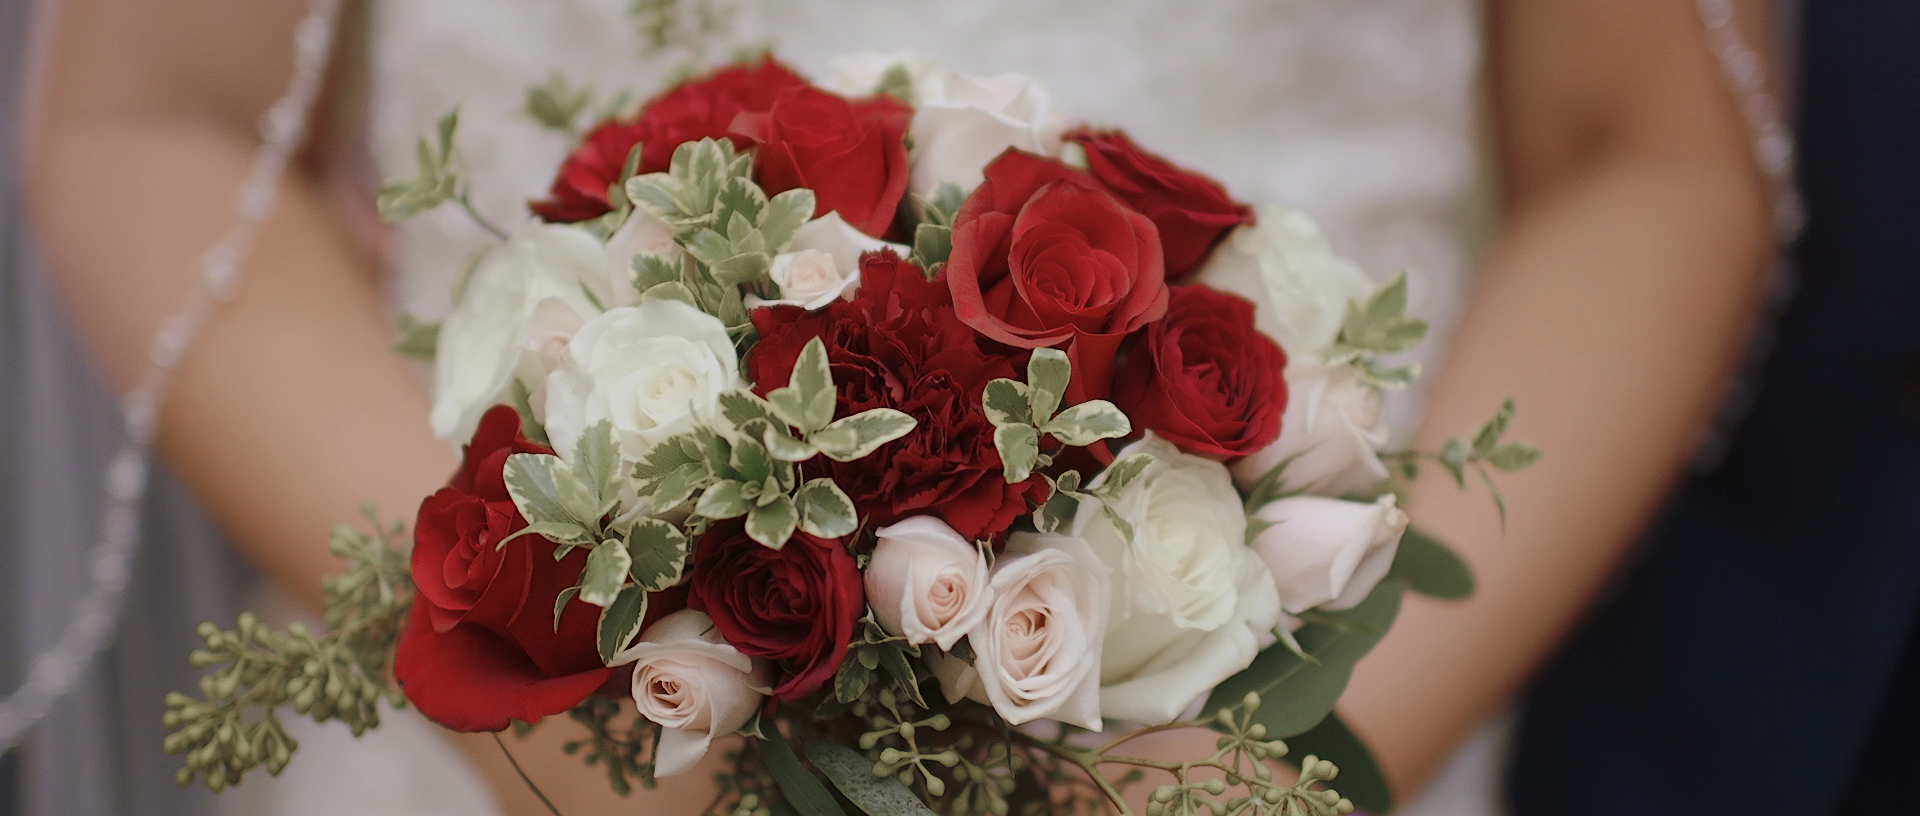 wedding-day-florals